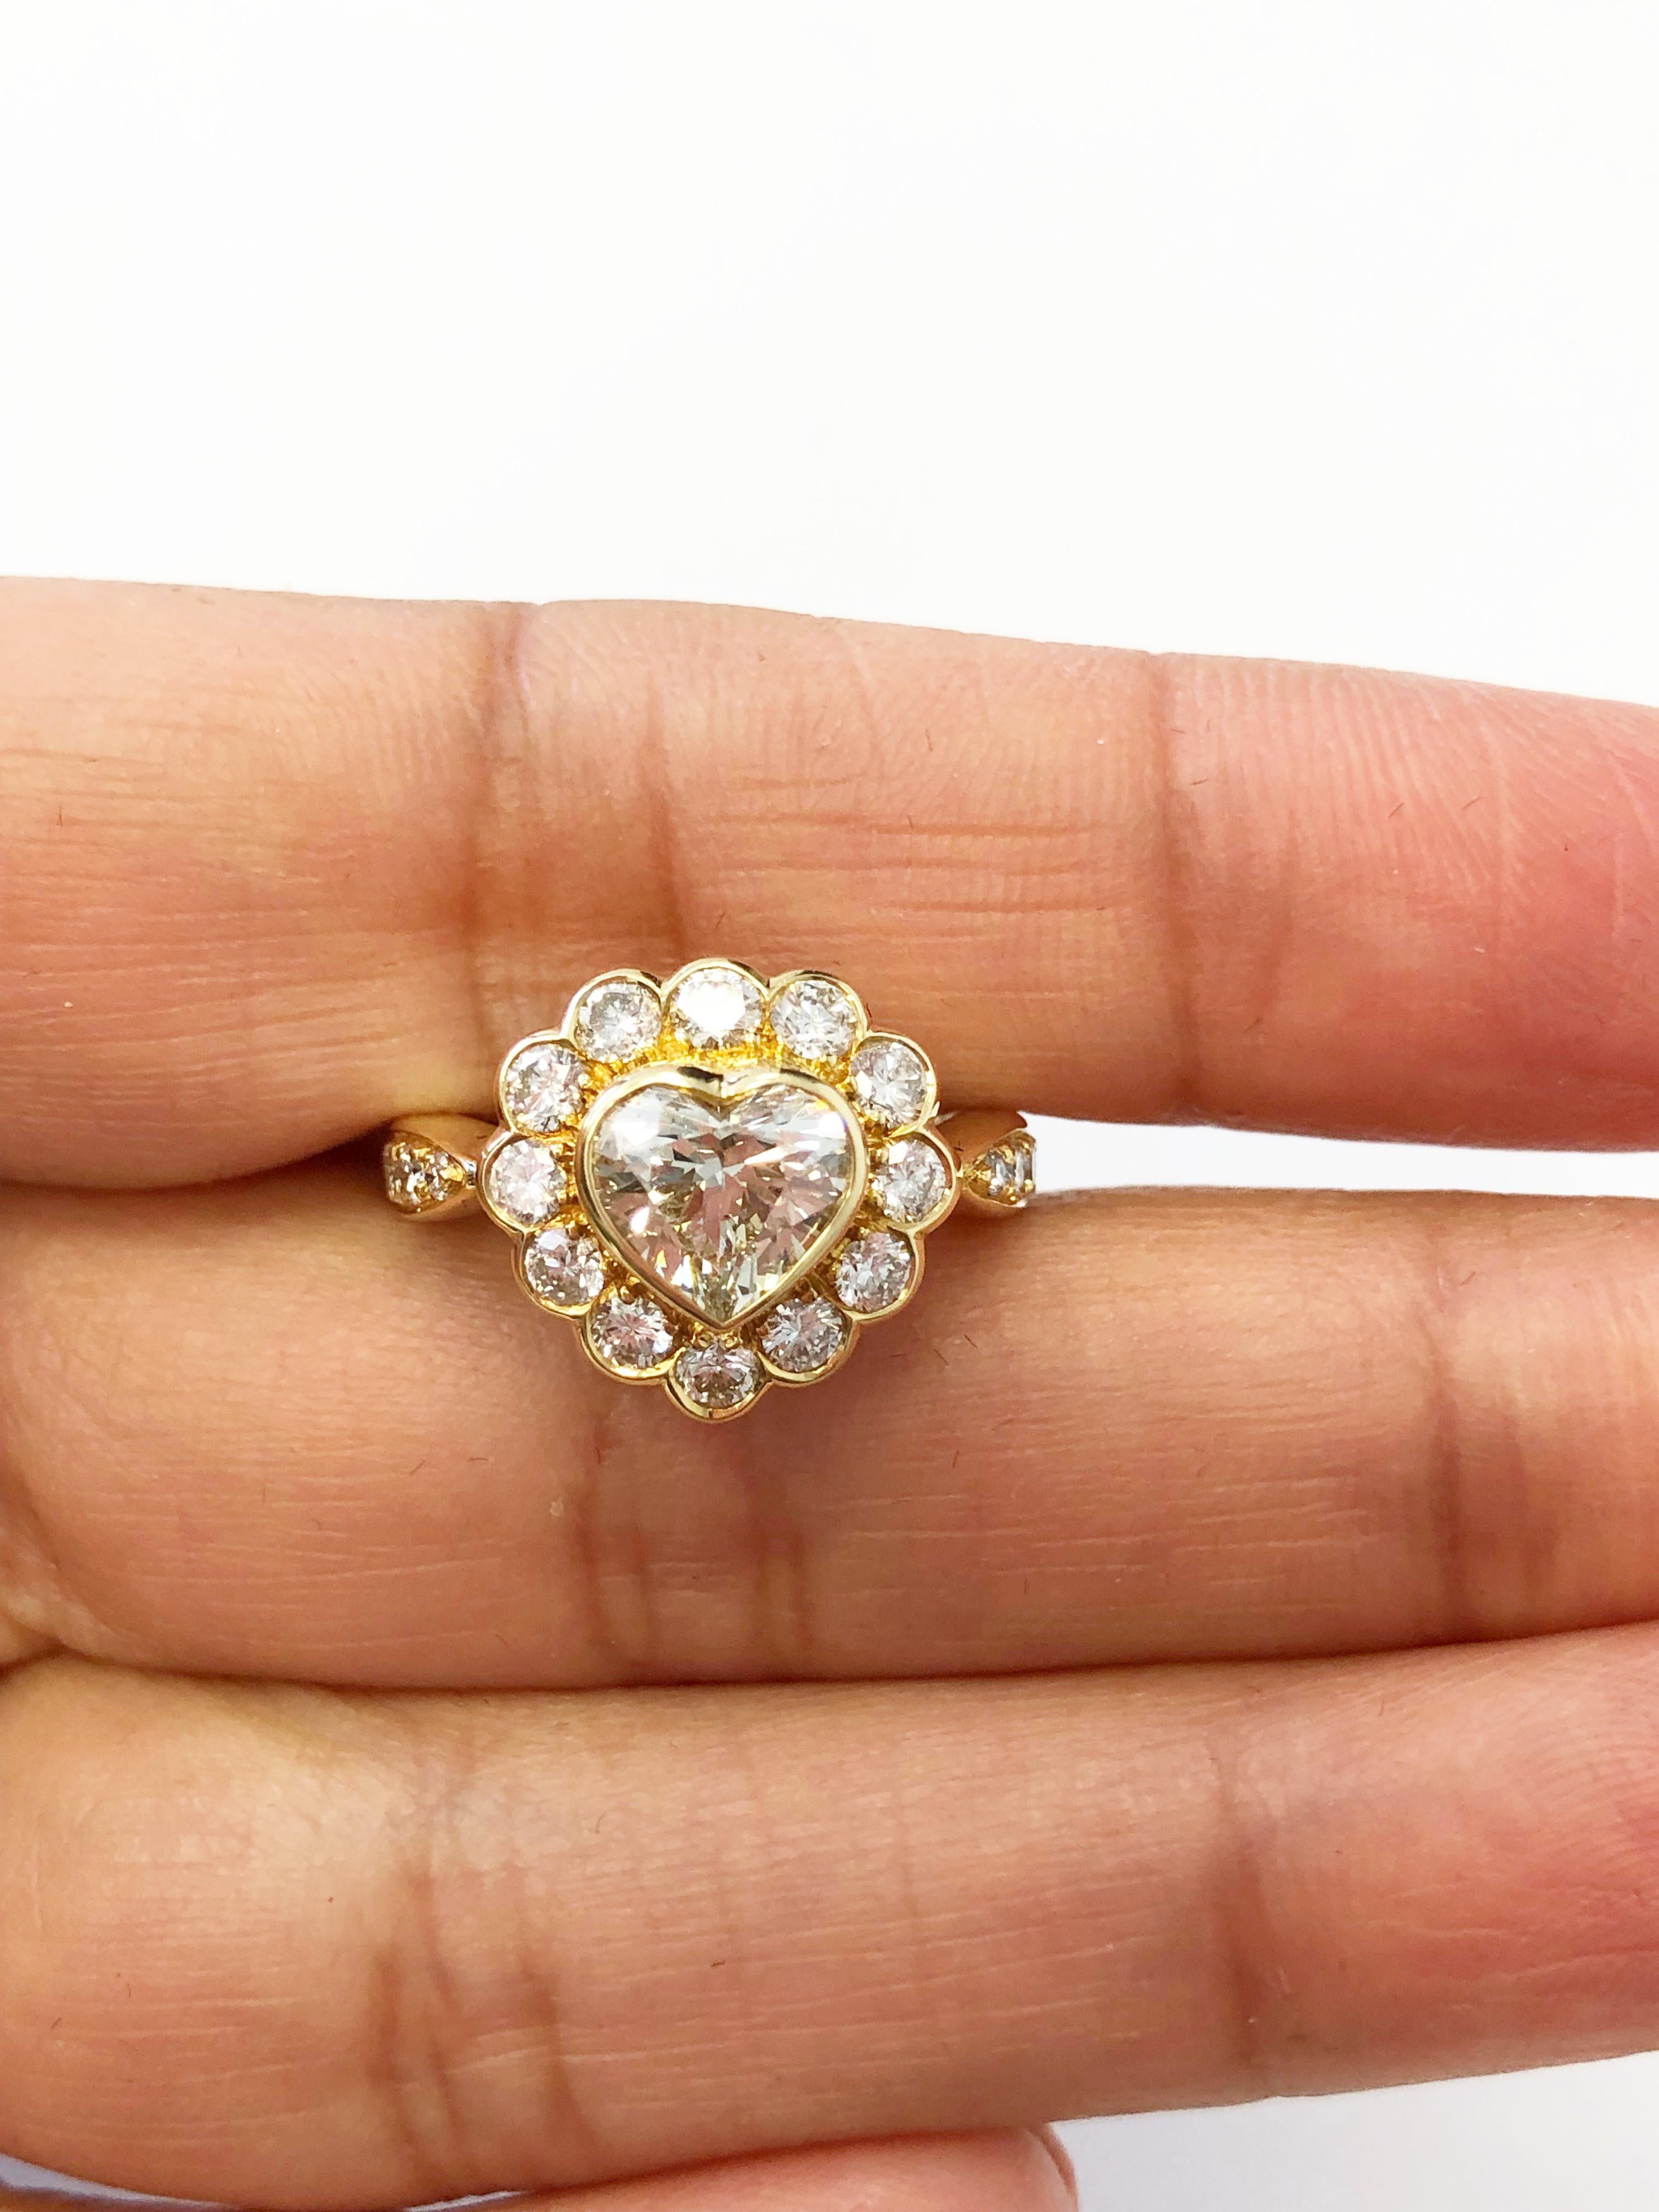 Women's or Men's White Diamond Heart Shape Engagement Ring in 18 Karat Yellow Gold